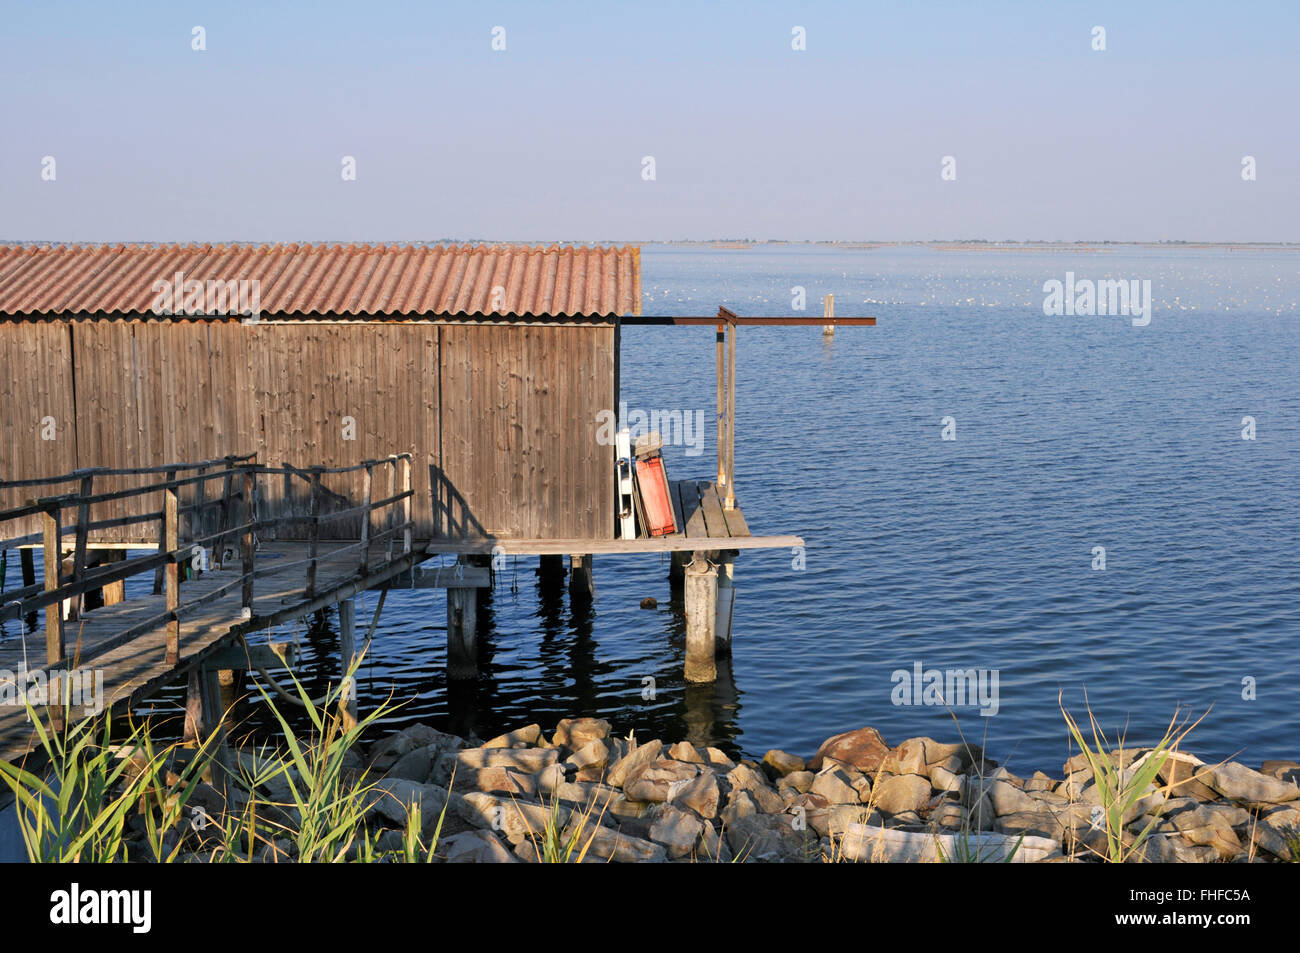 Fisherman stilt capanna, delta del Po laguna, provincia di Rovigo, regione Veneto, Italia Foto Stock